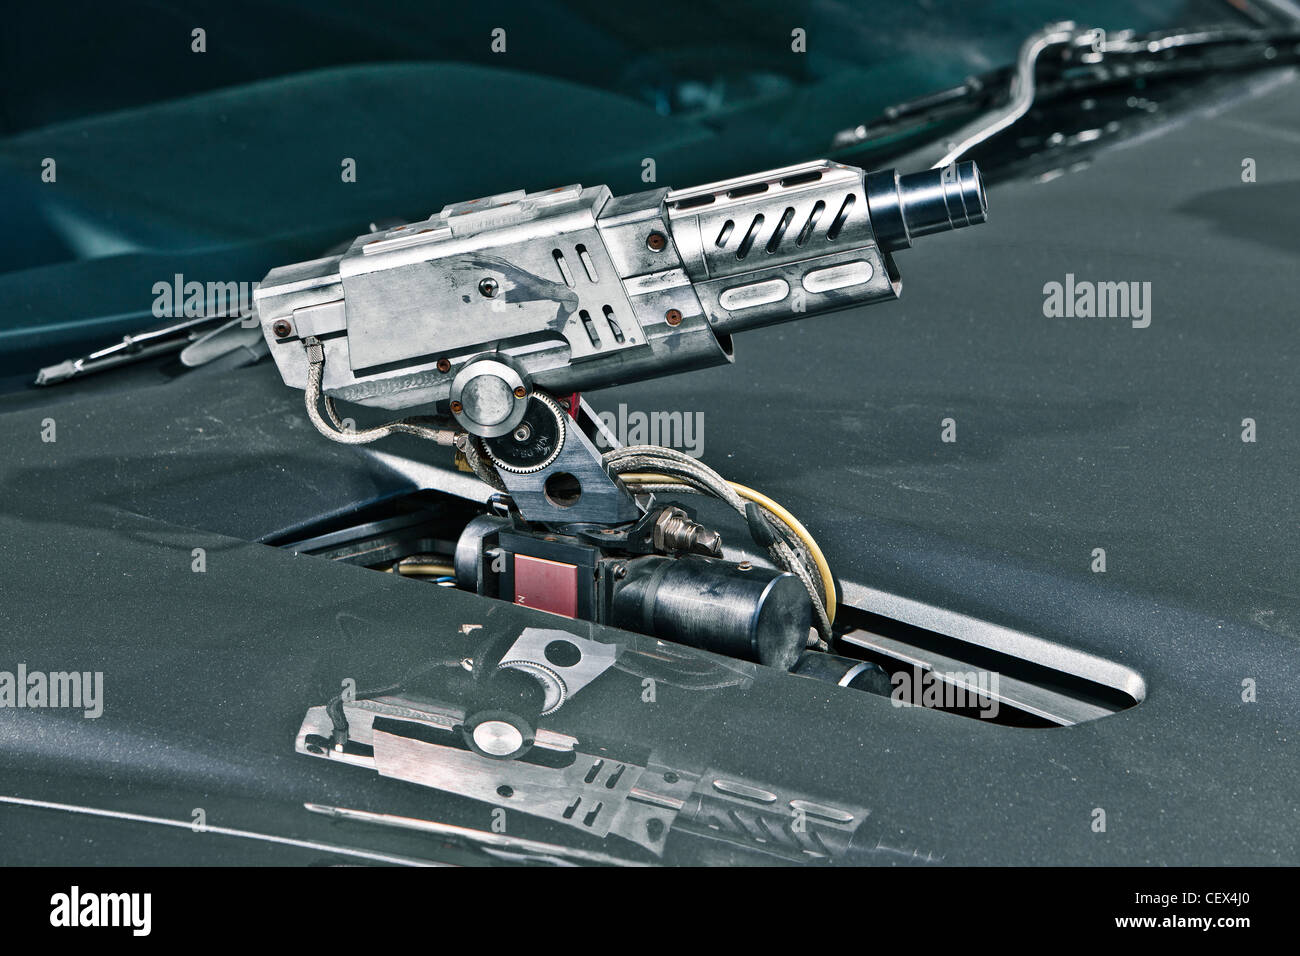 Machine gun sur Aston Martin DB5, James Bond classic car Banque D'Images